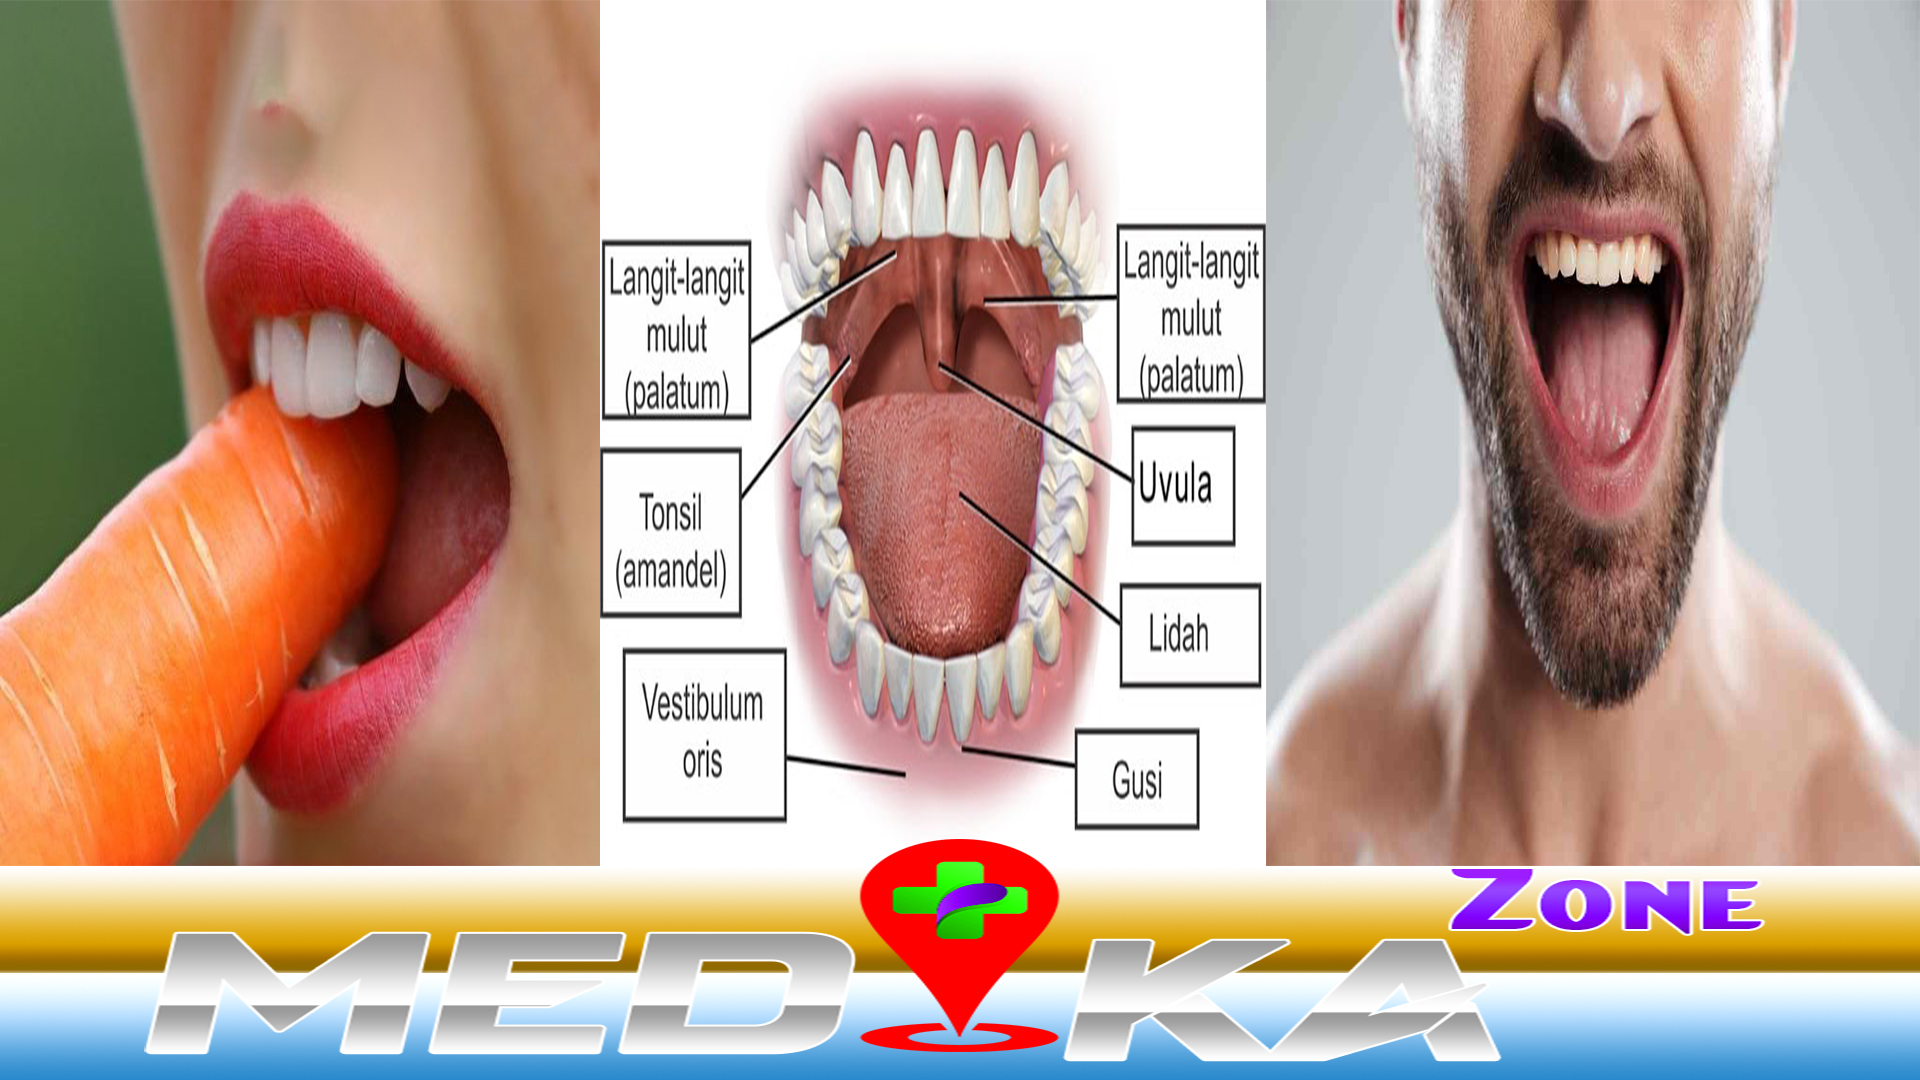 Mengenali Mulut Fungsi dan Cara Menjaga nya